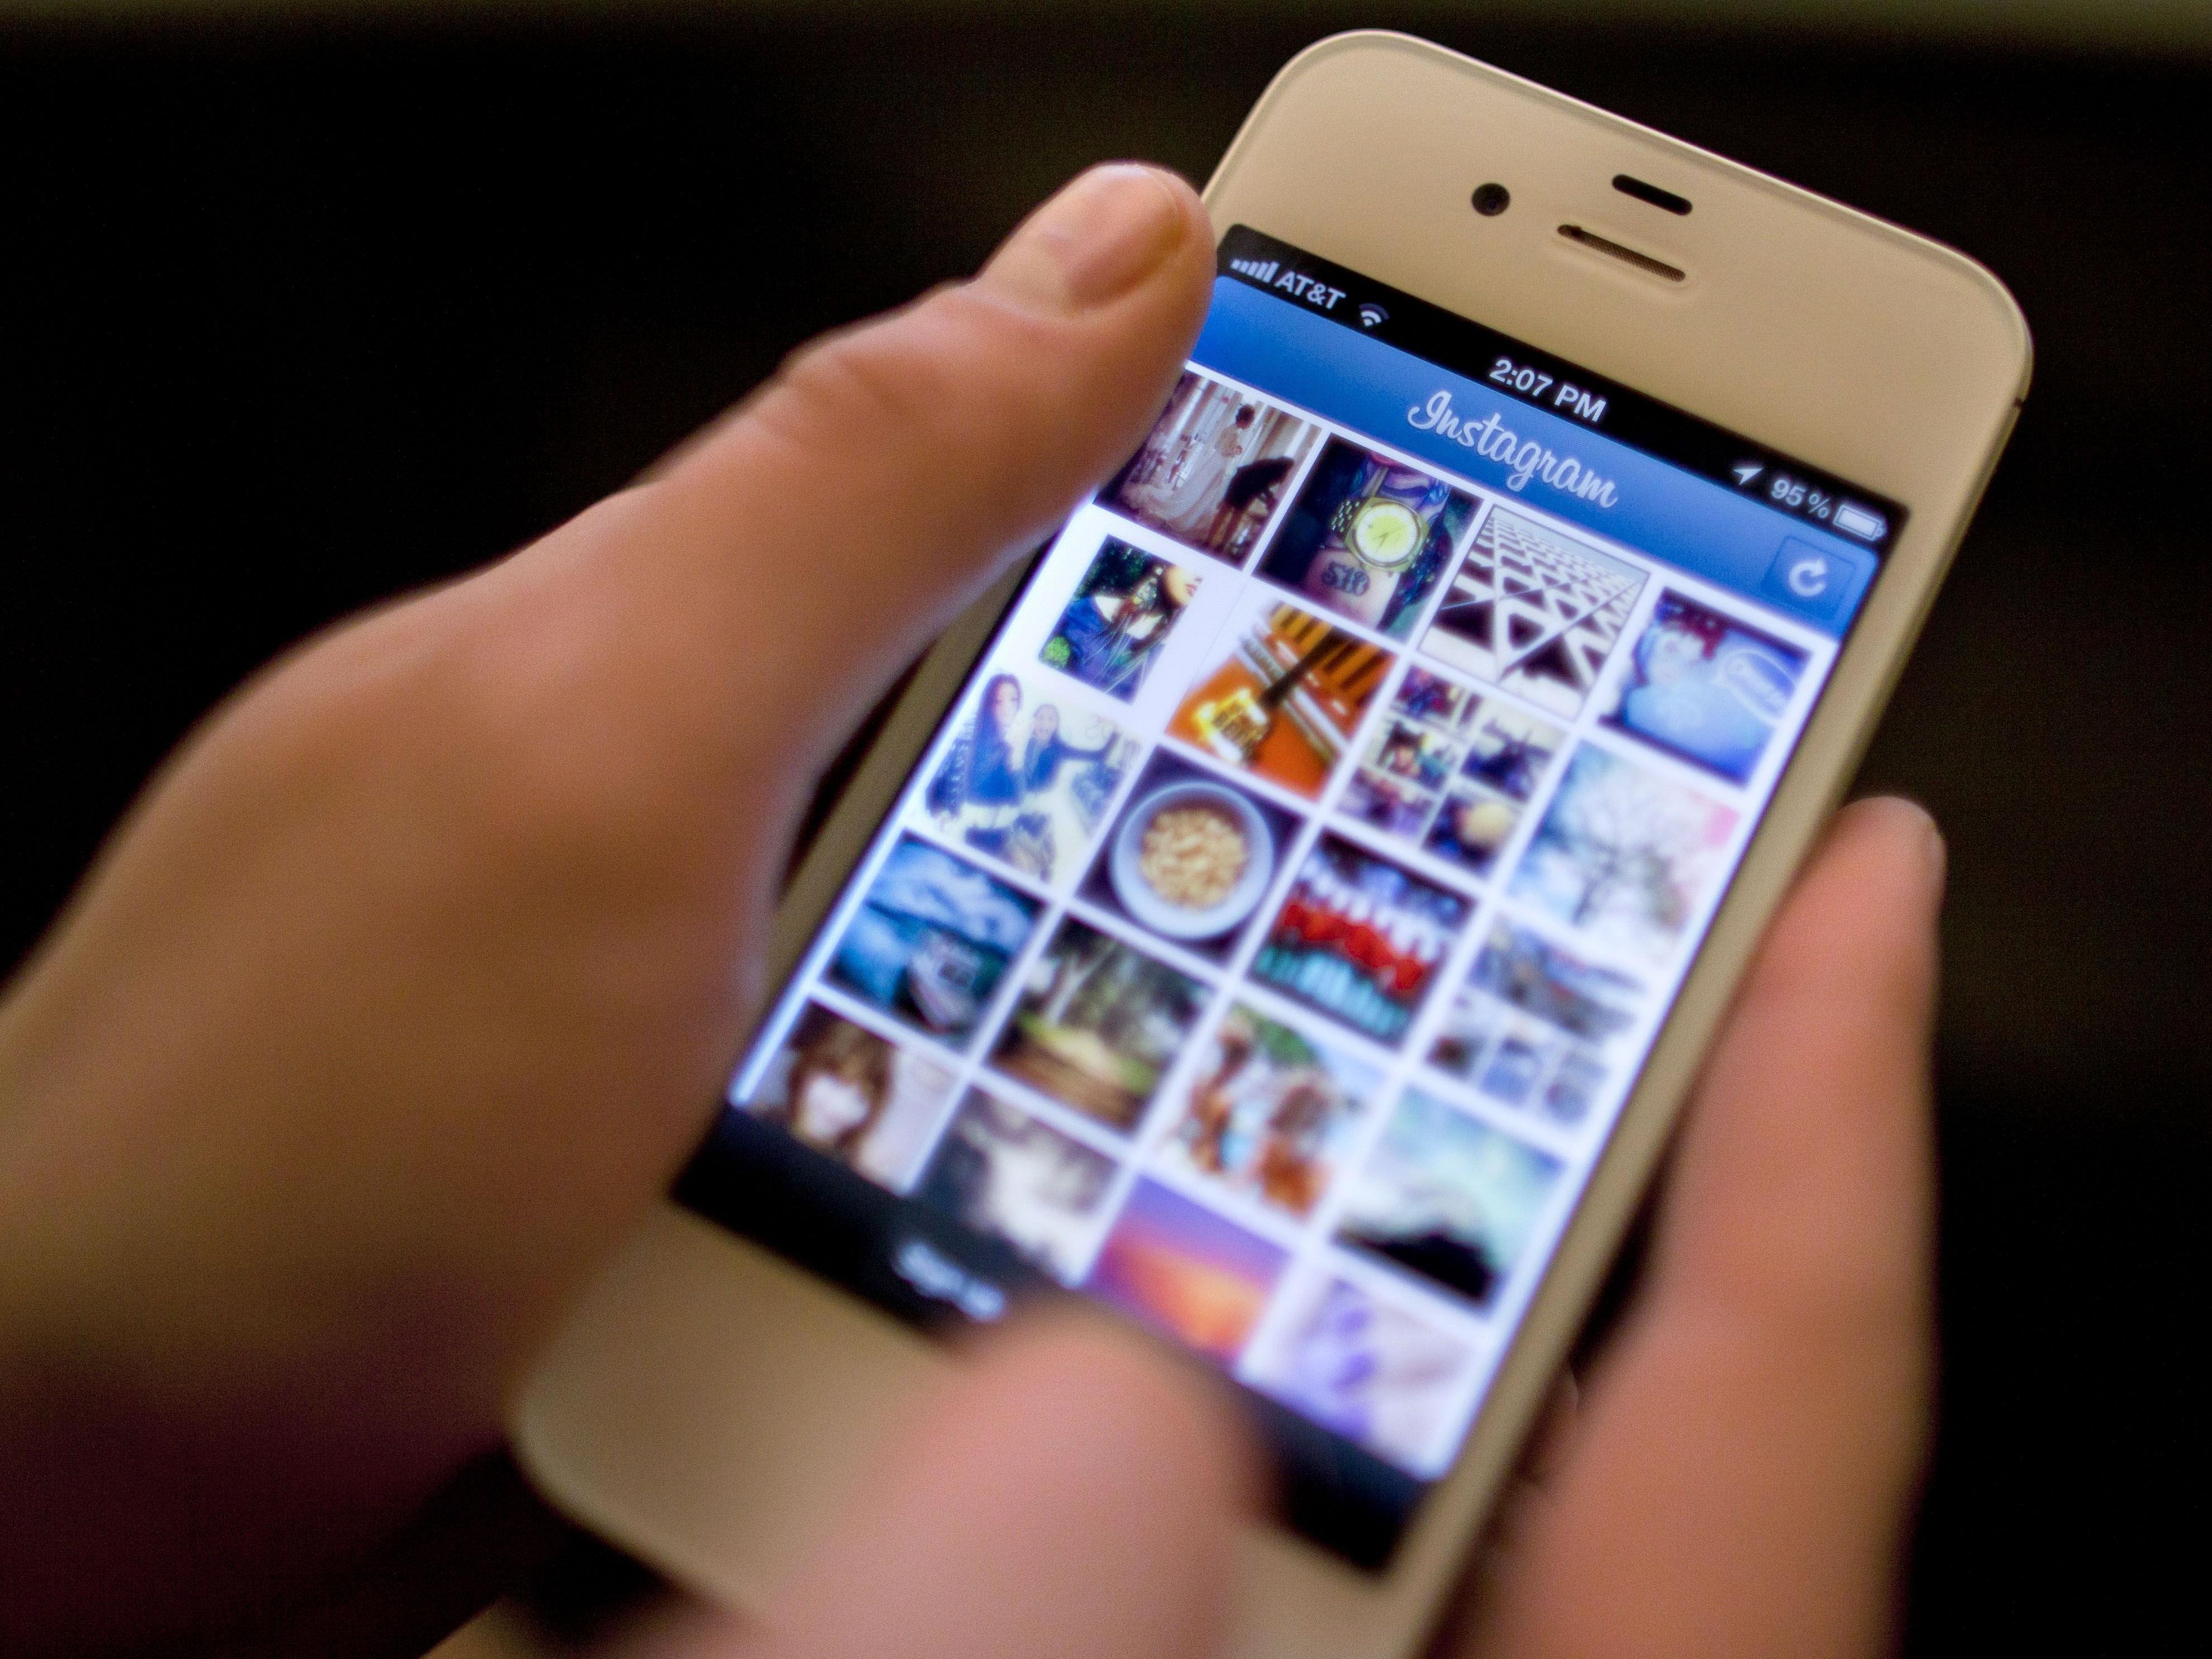 Instagram: Bisher konnten Bilder über App nur öffentlich verschickt werden